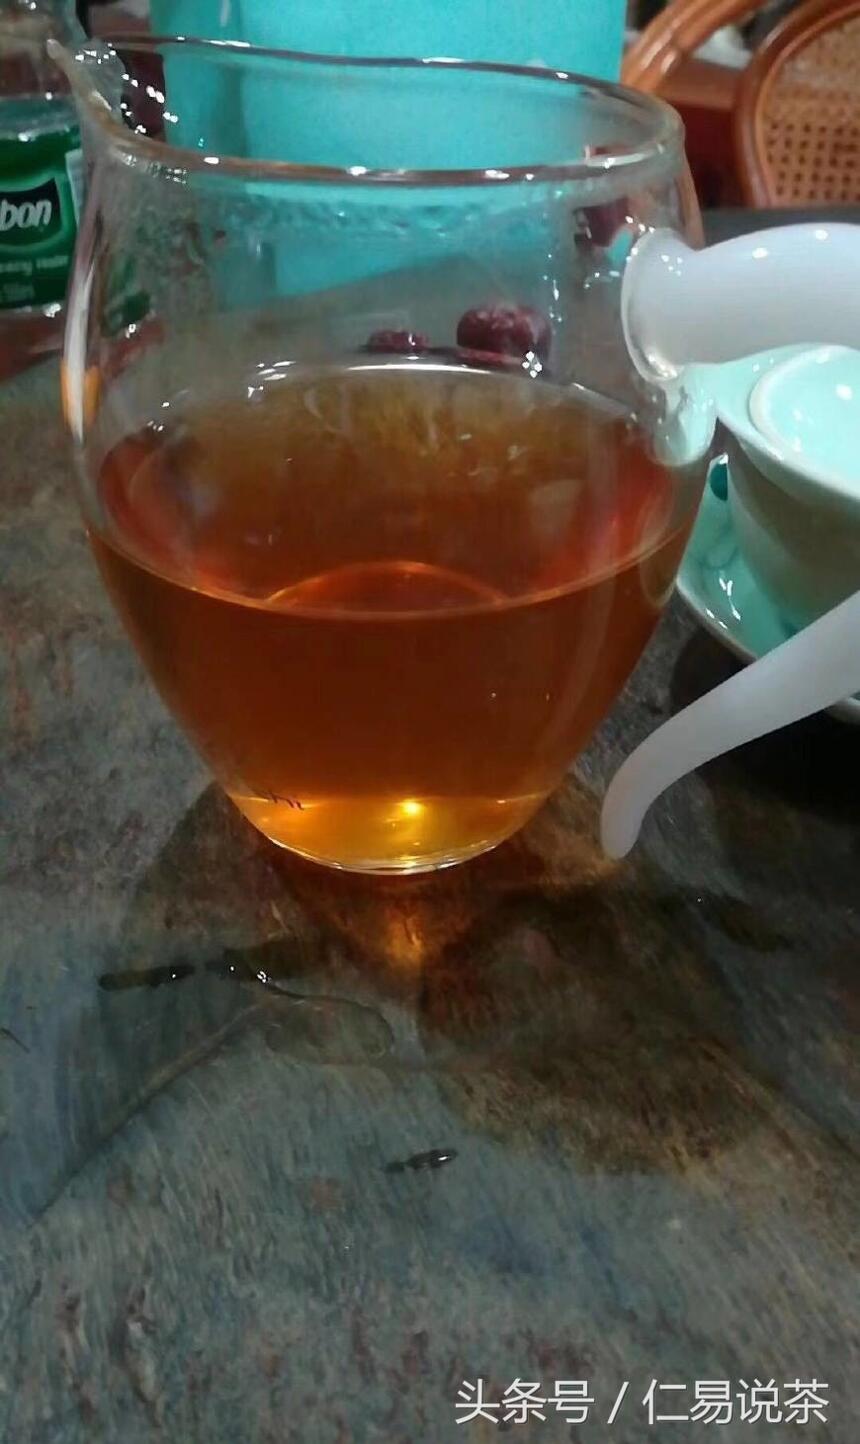 仁易说茶：普洱茶圈形成的原因，说好的茶不分界呢？为什么分界了